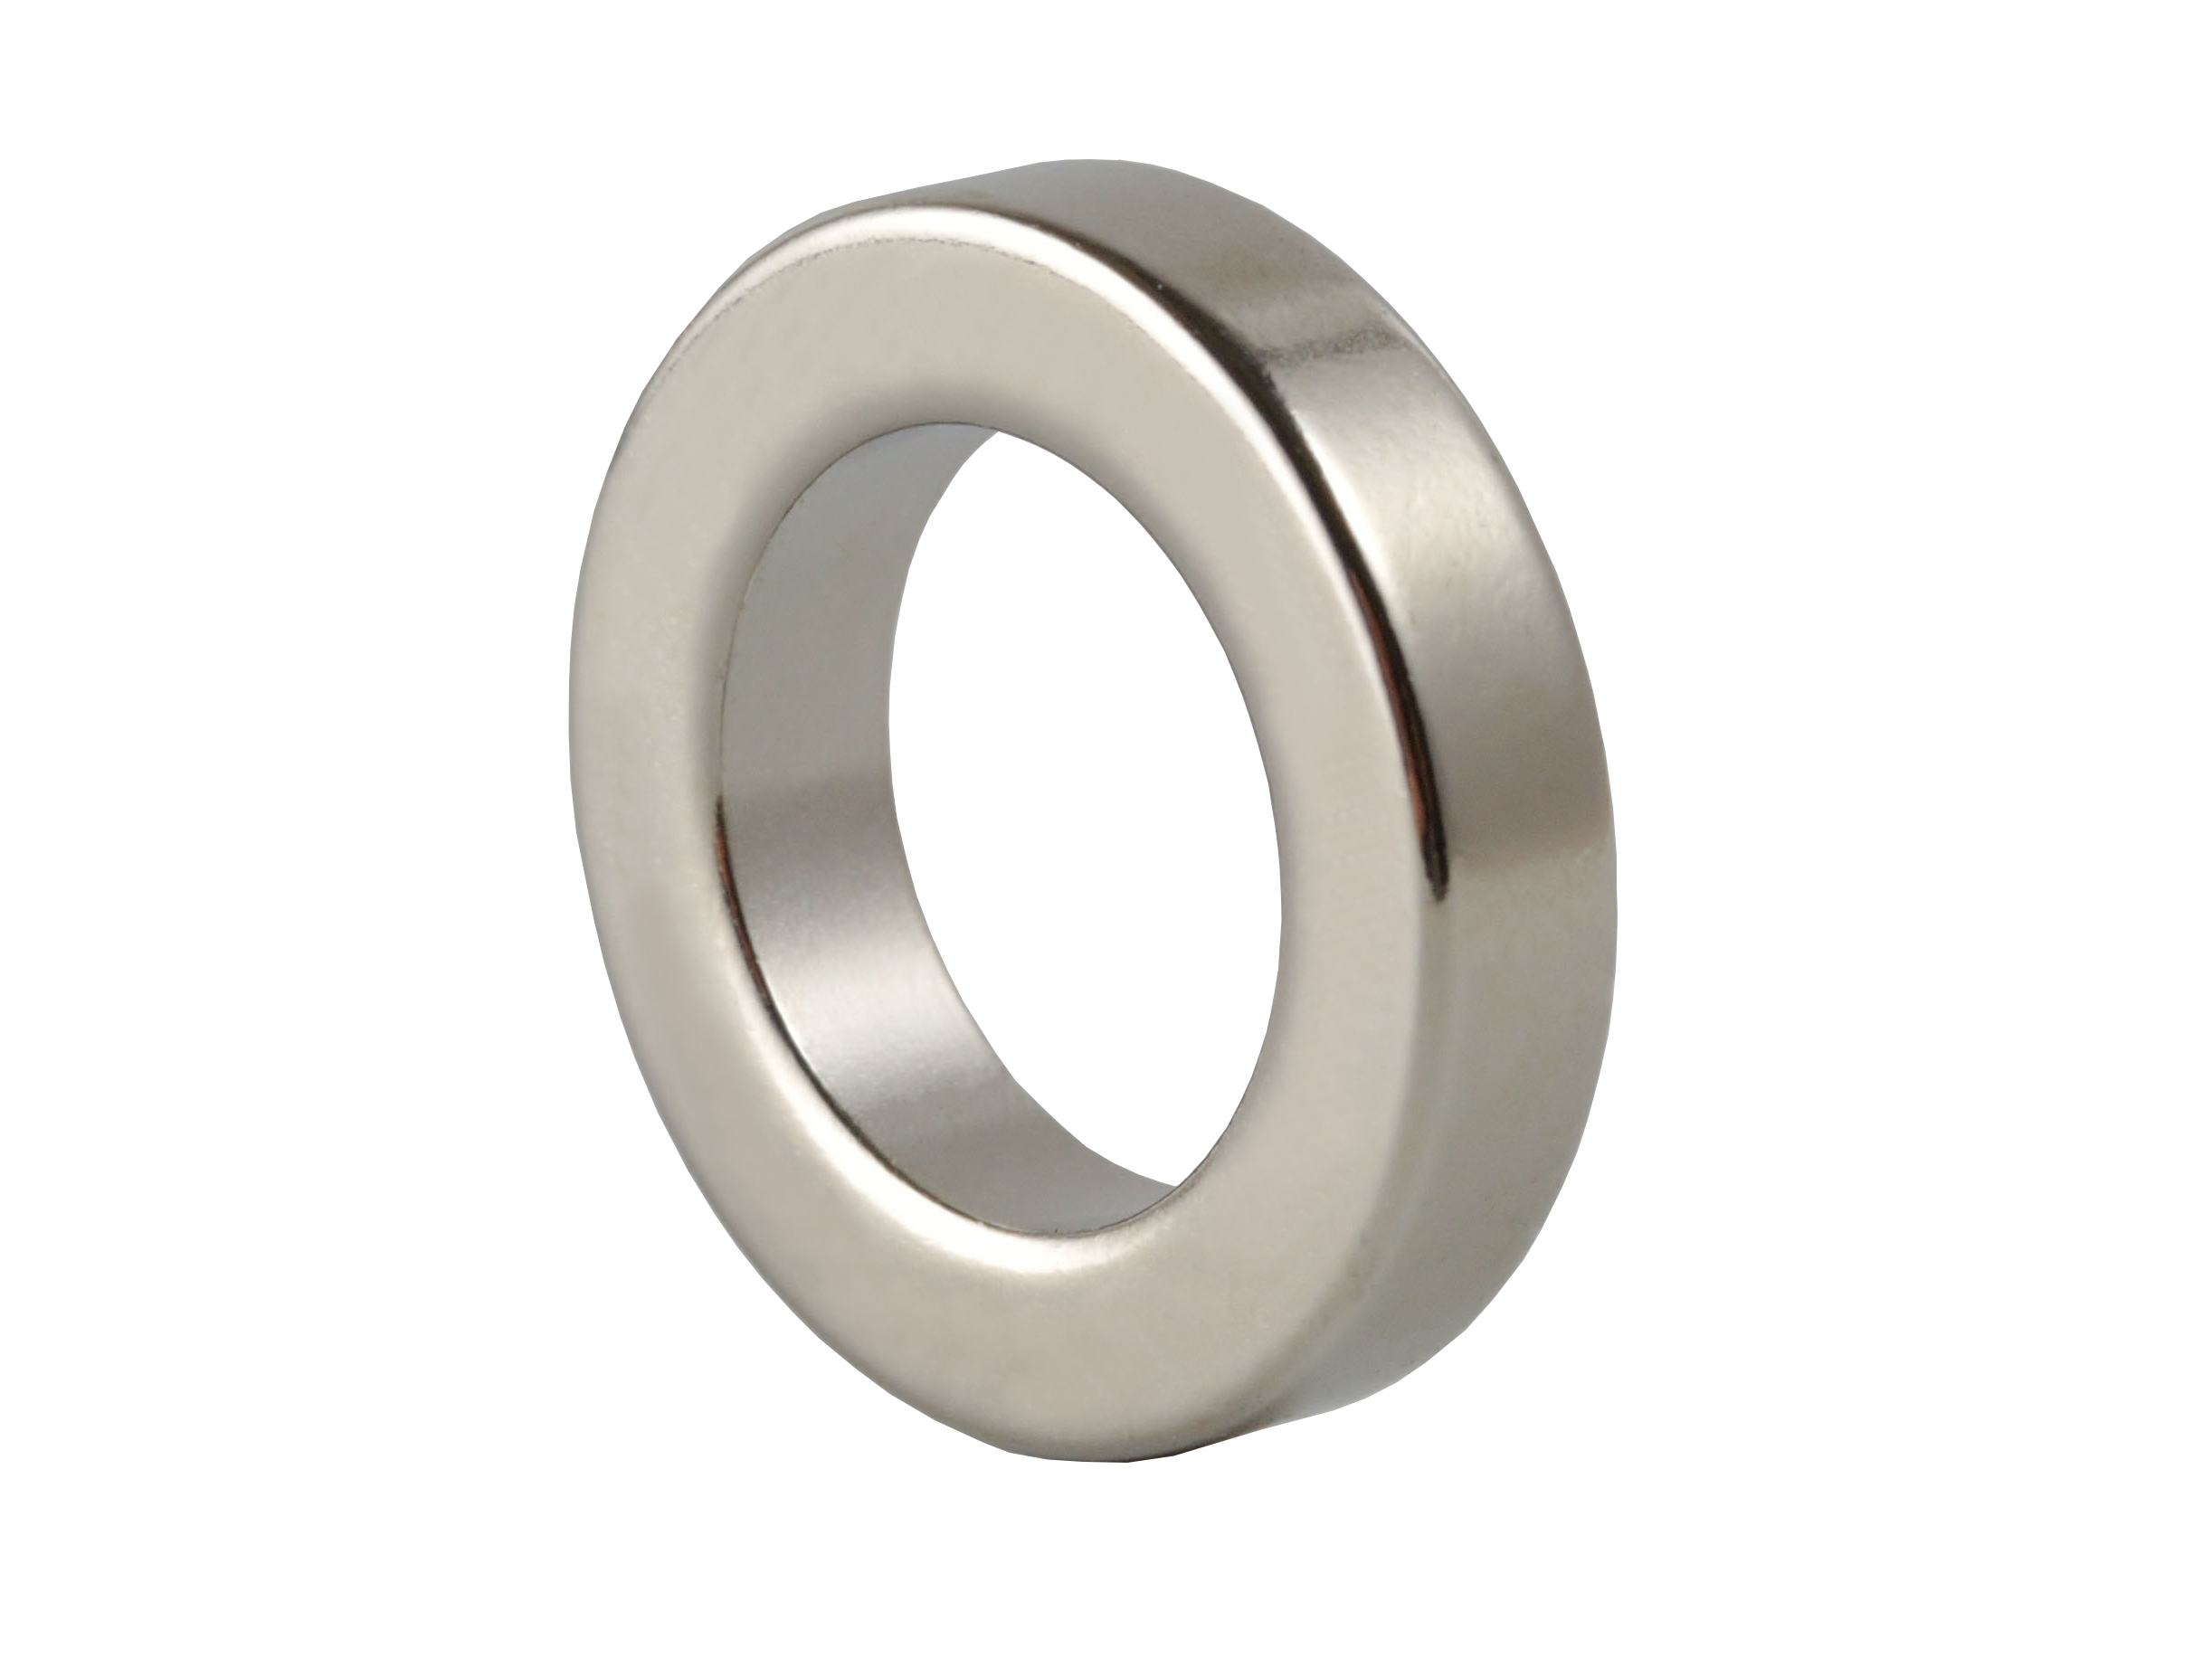 Ring‑Shaped Neodymium Magnet (NOR049) 